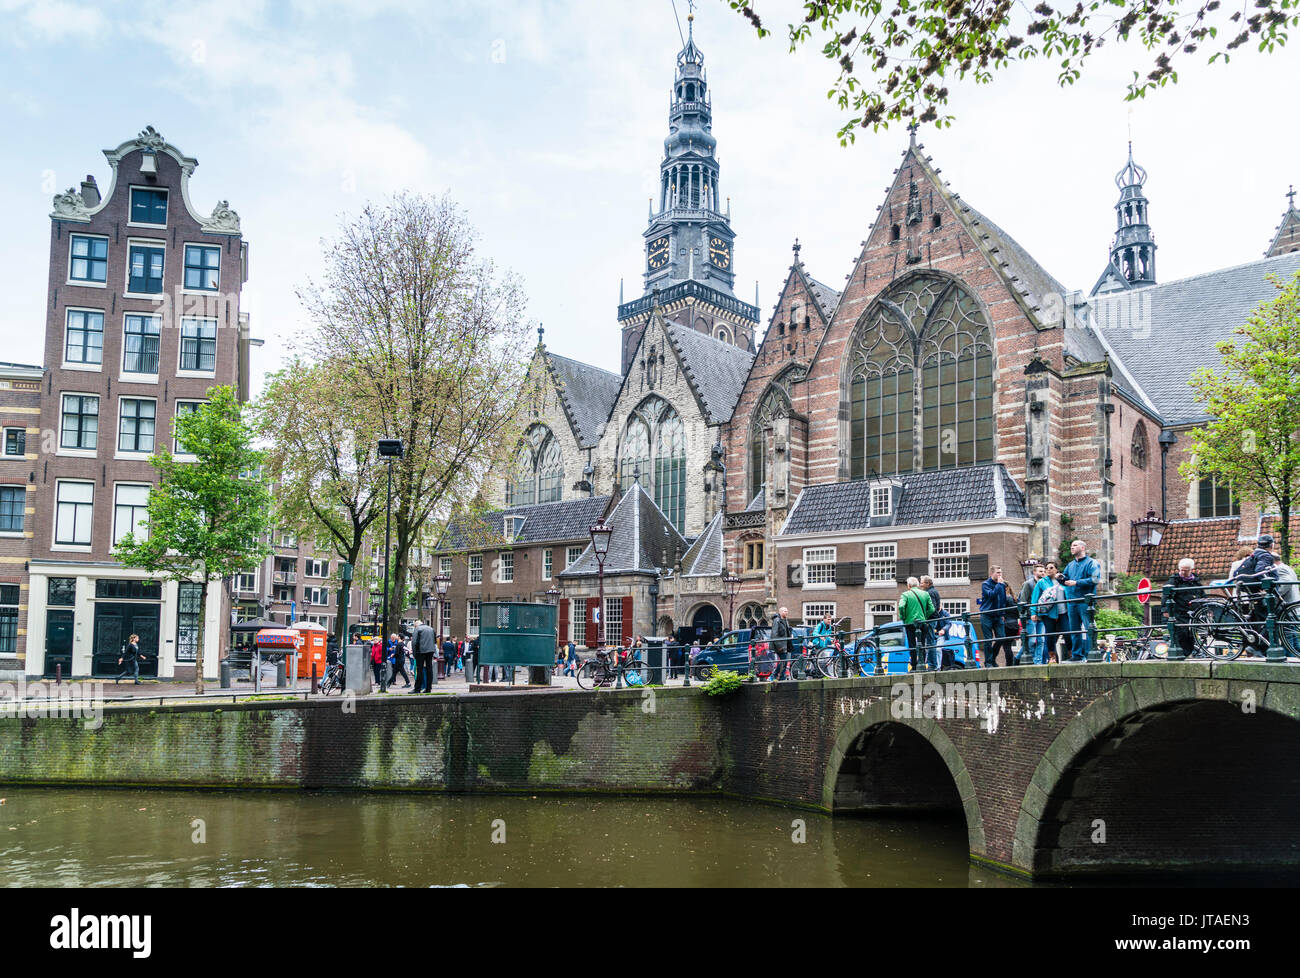 Oude Kerk, église du xiiie siècle et la plus ancienne d'Amsterdam, Pays-Bas, Europe Banque D'Images